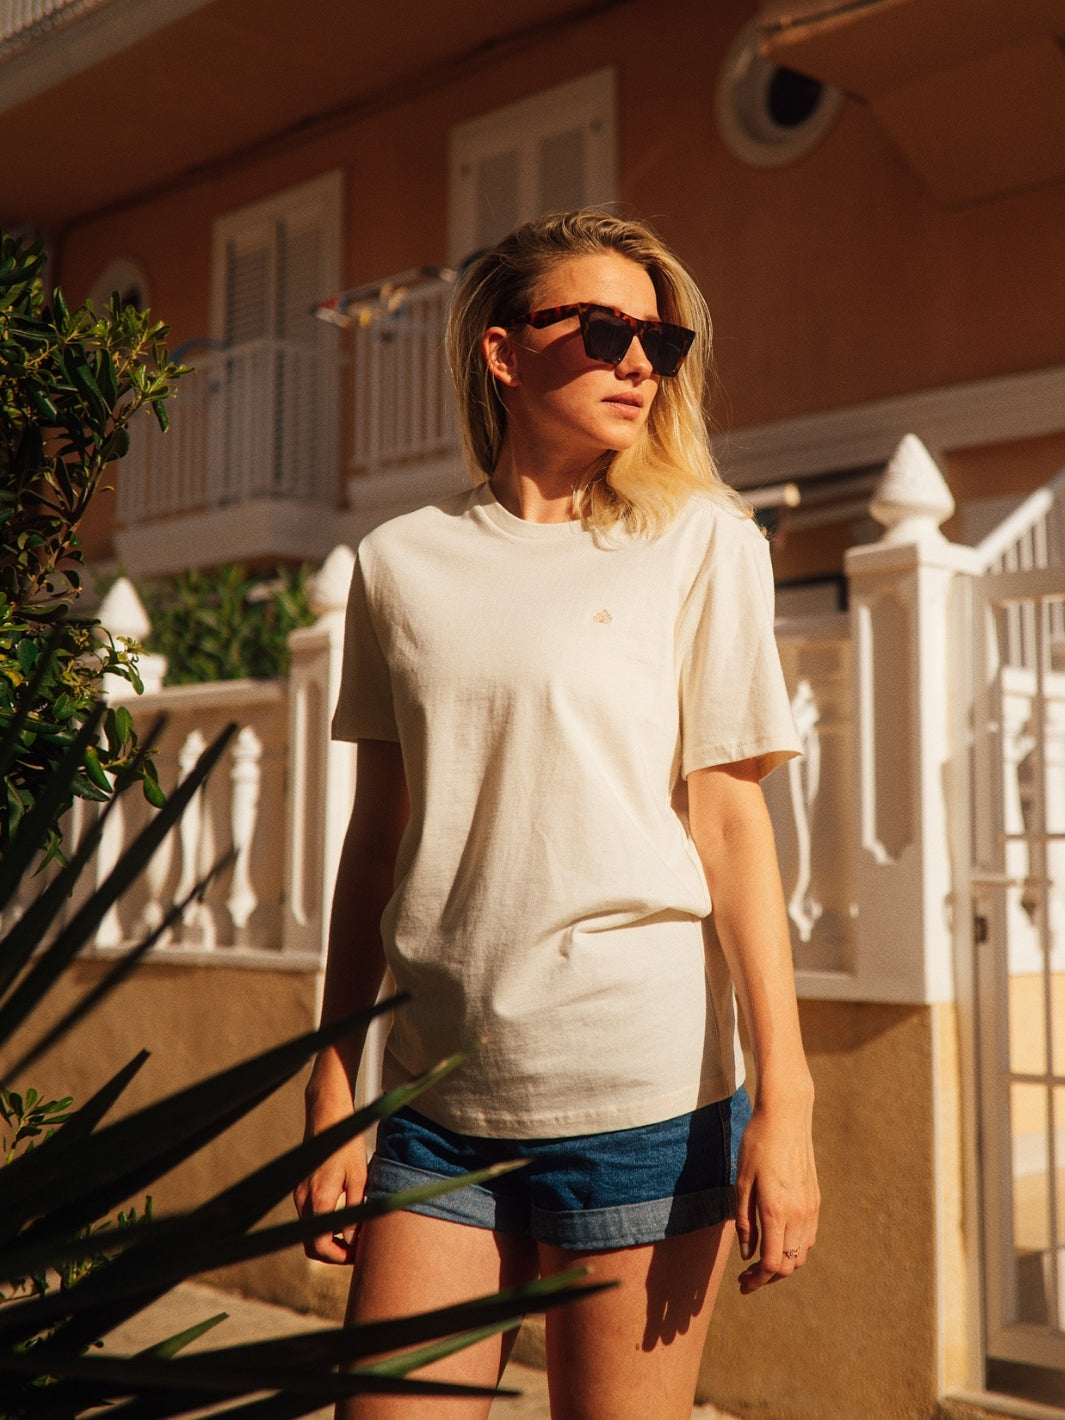 Cape dámské tričko z biobavlny s kulatým výstřihem přírodní nebělené blondýna s brýlemi